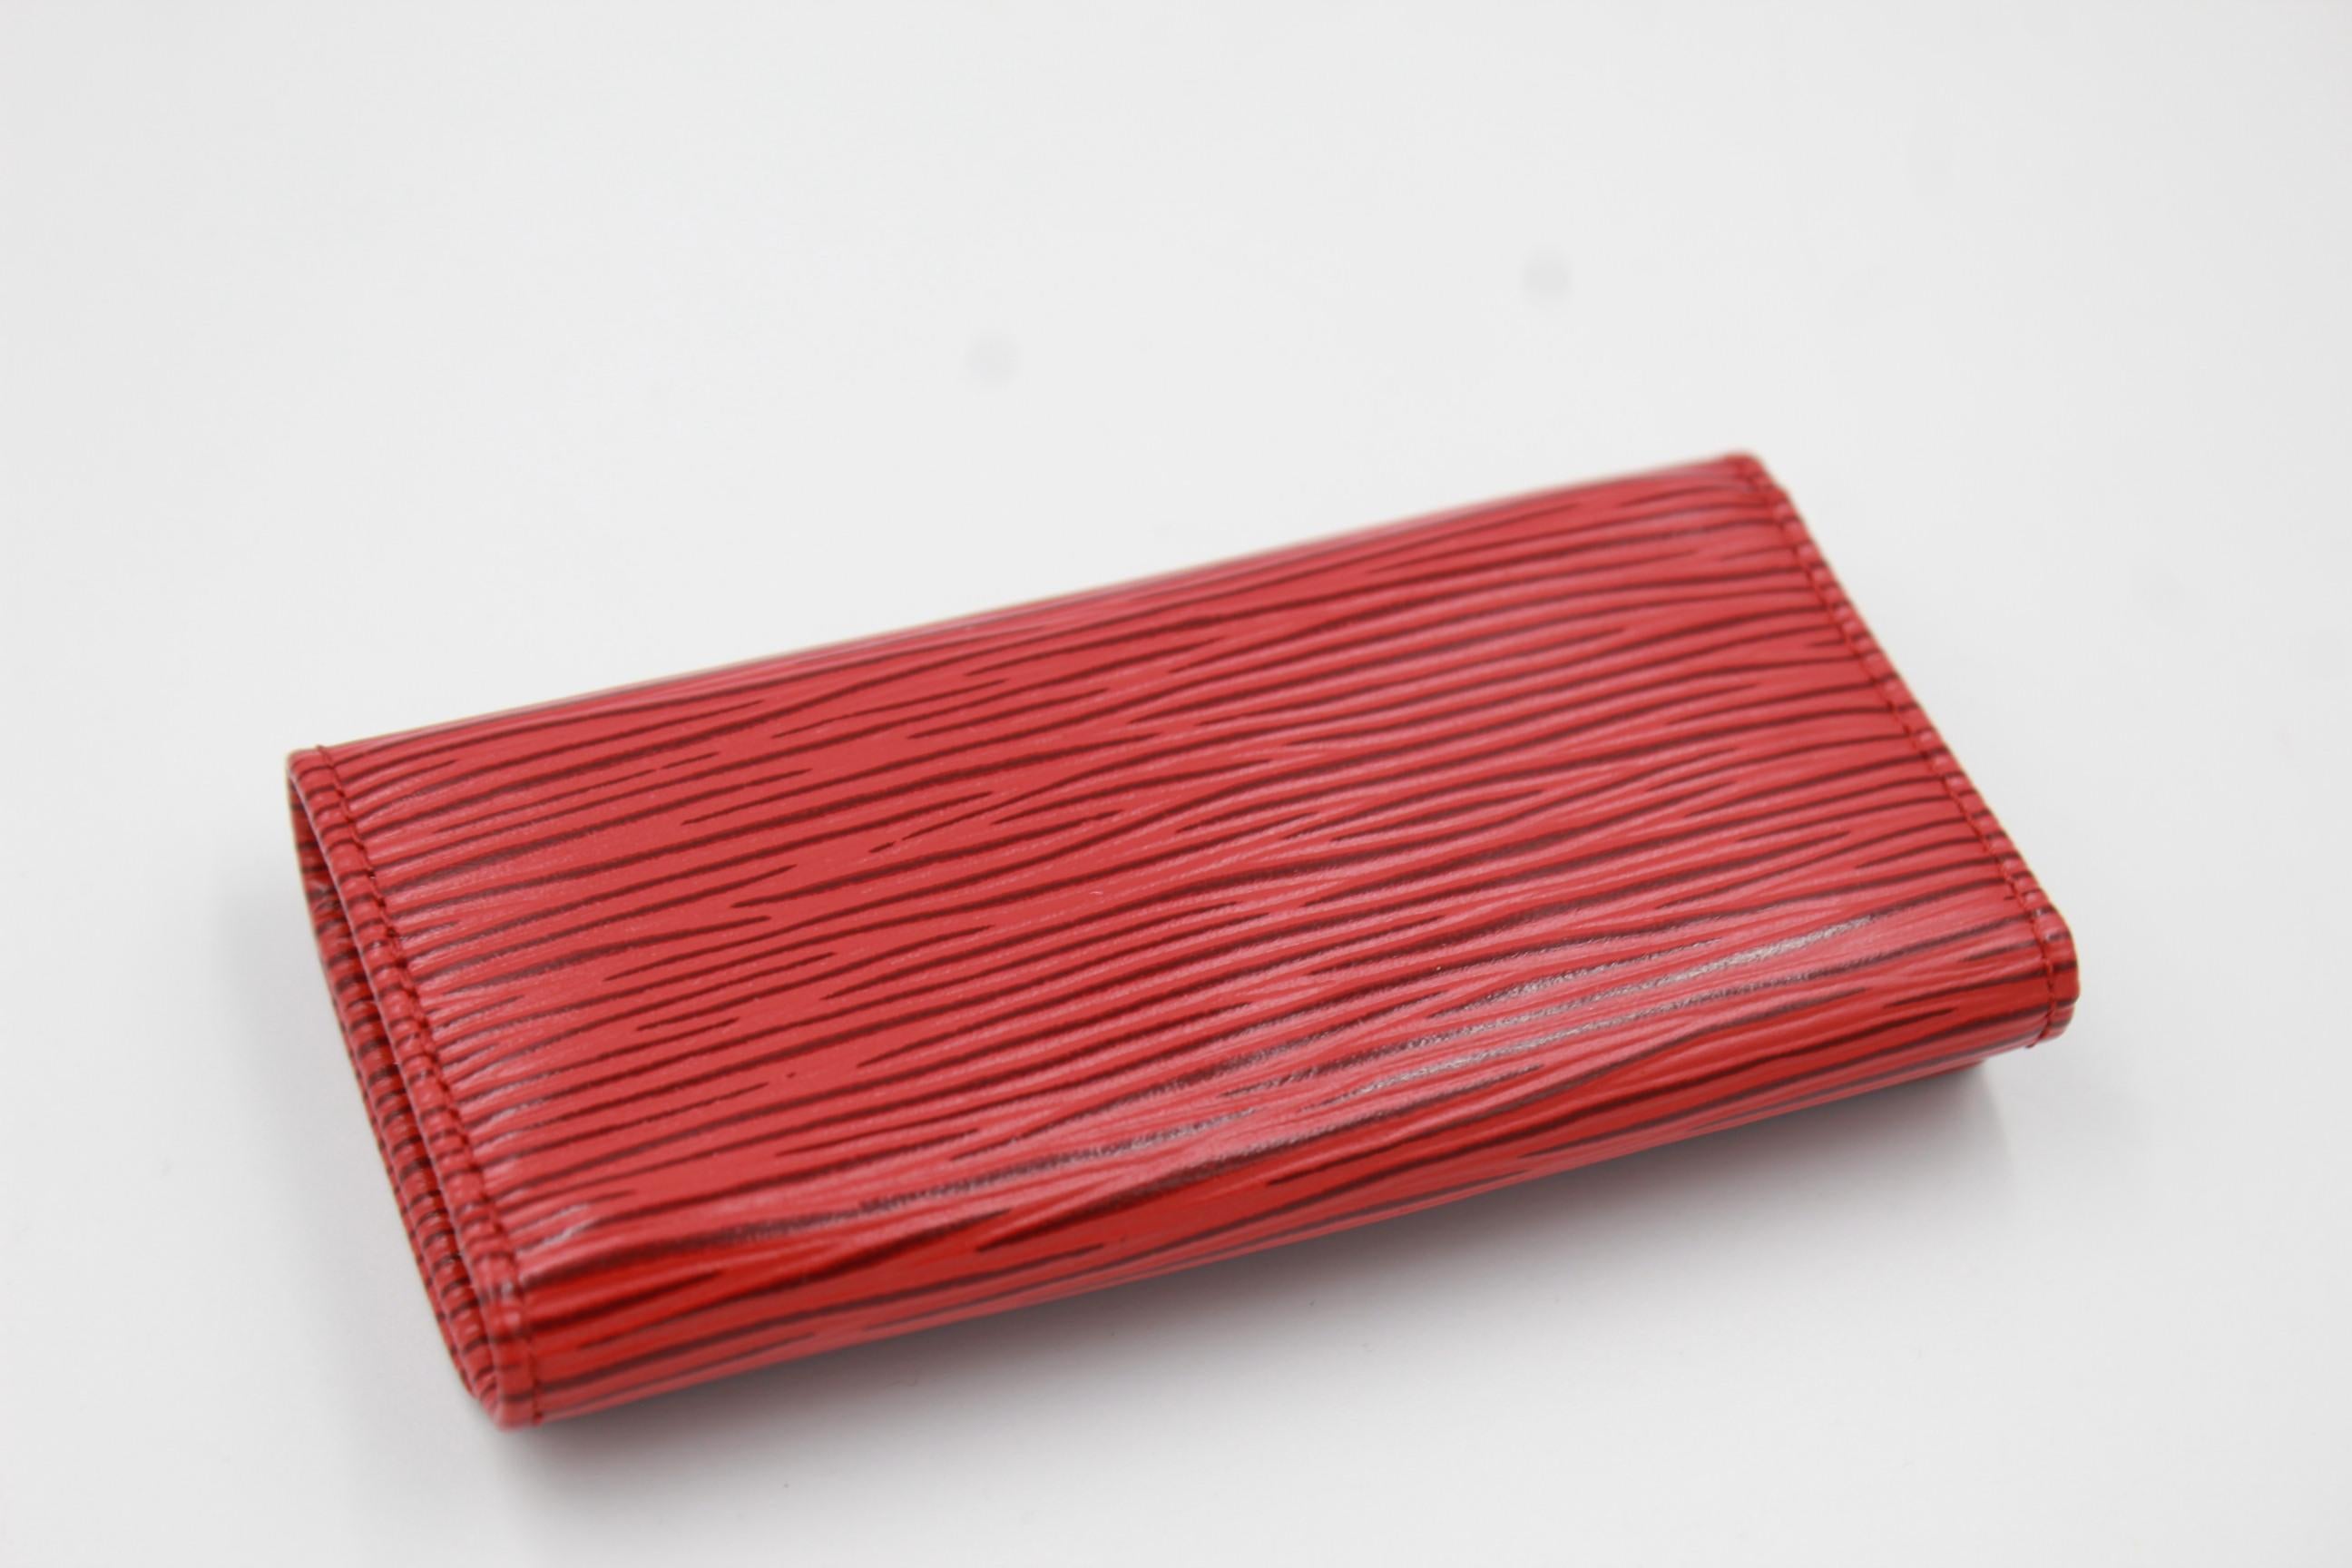 Louis Vuitton multi keys  in red épi leather.
For 4 keys.
Good condition.
6cm /16cm x 10.5cm x 1.5cm